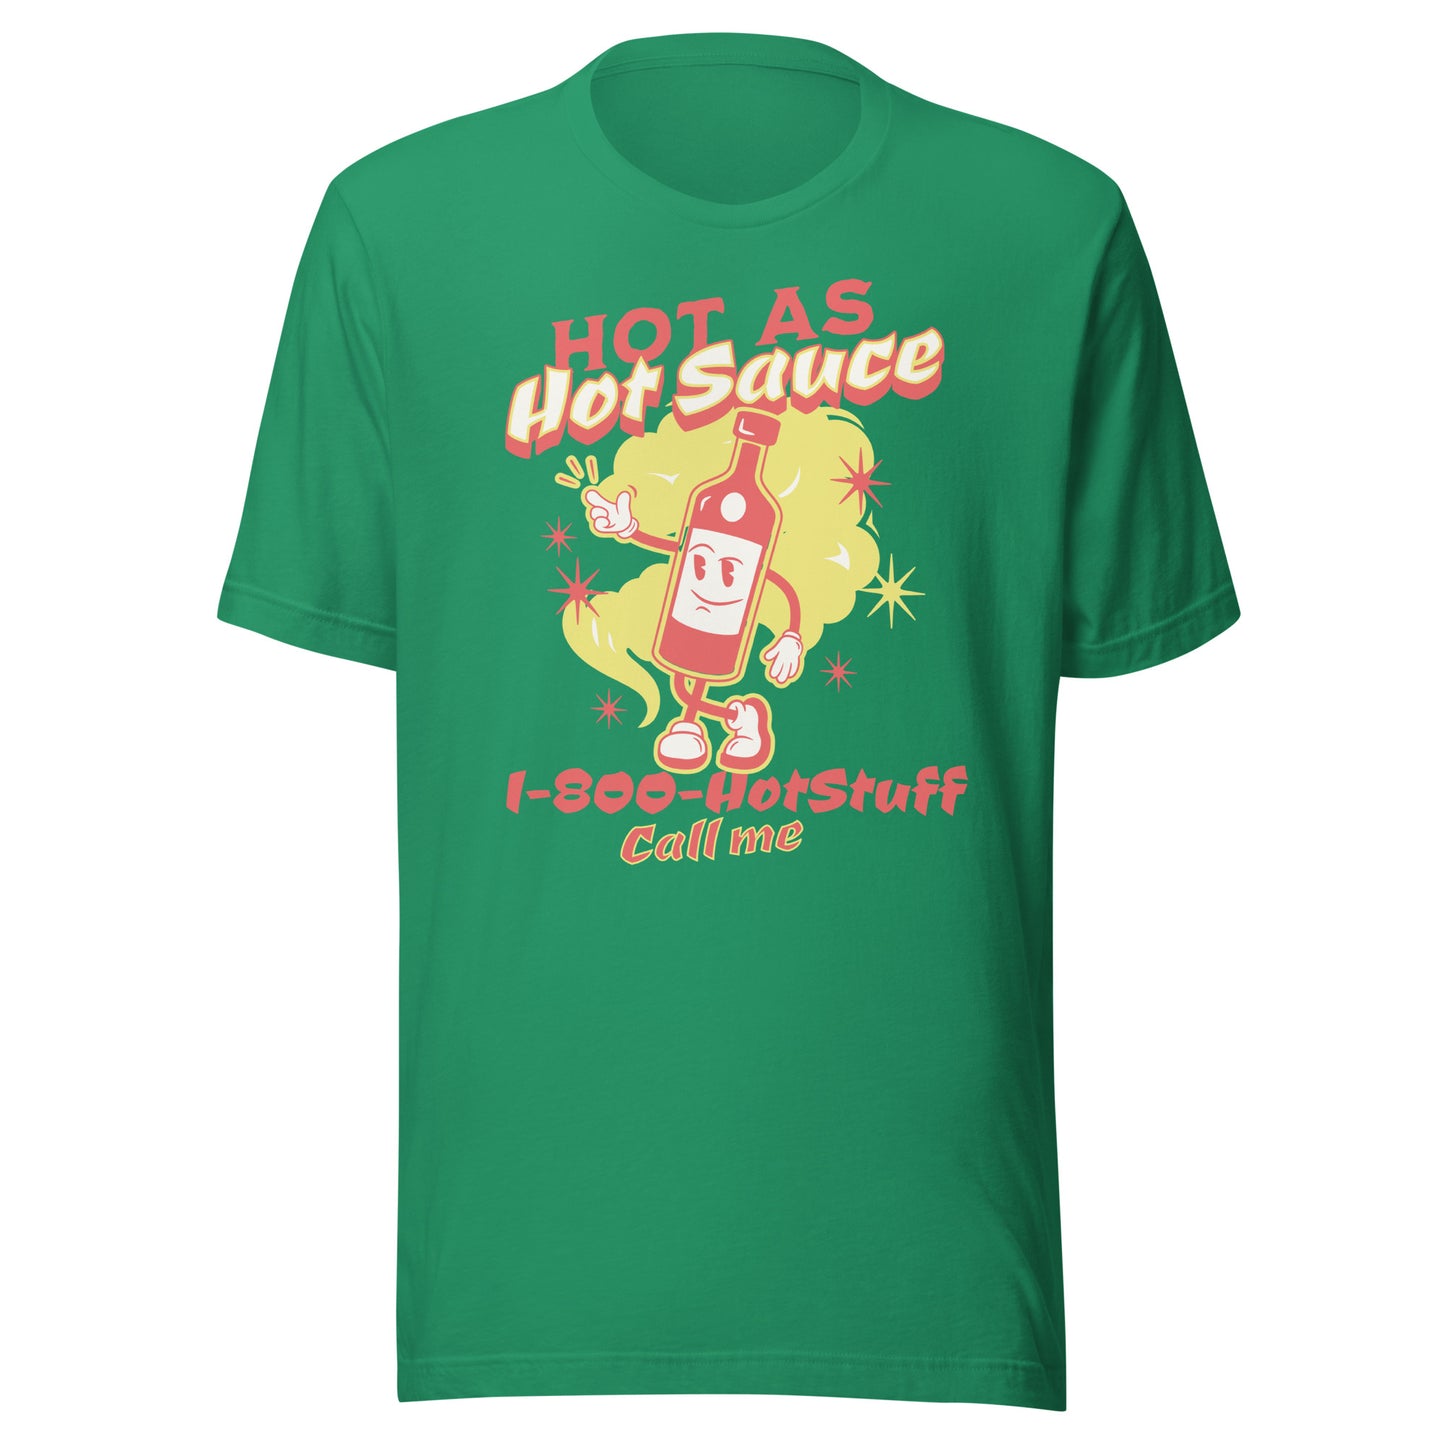 Hot As Hot Sauce Mascot Shirt